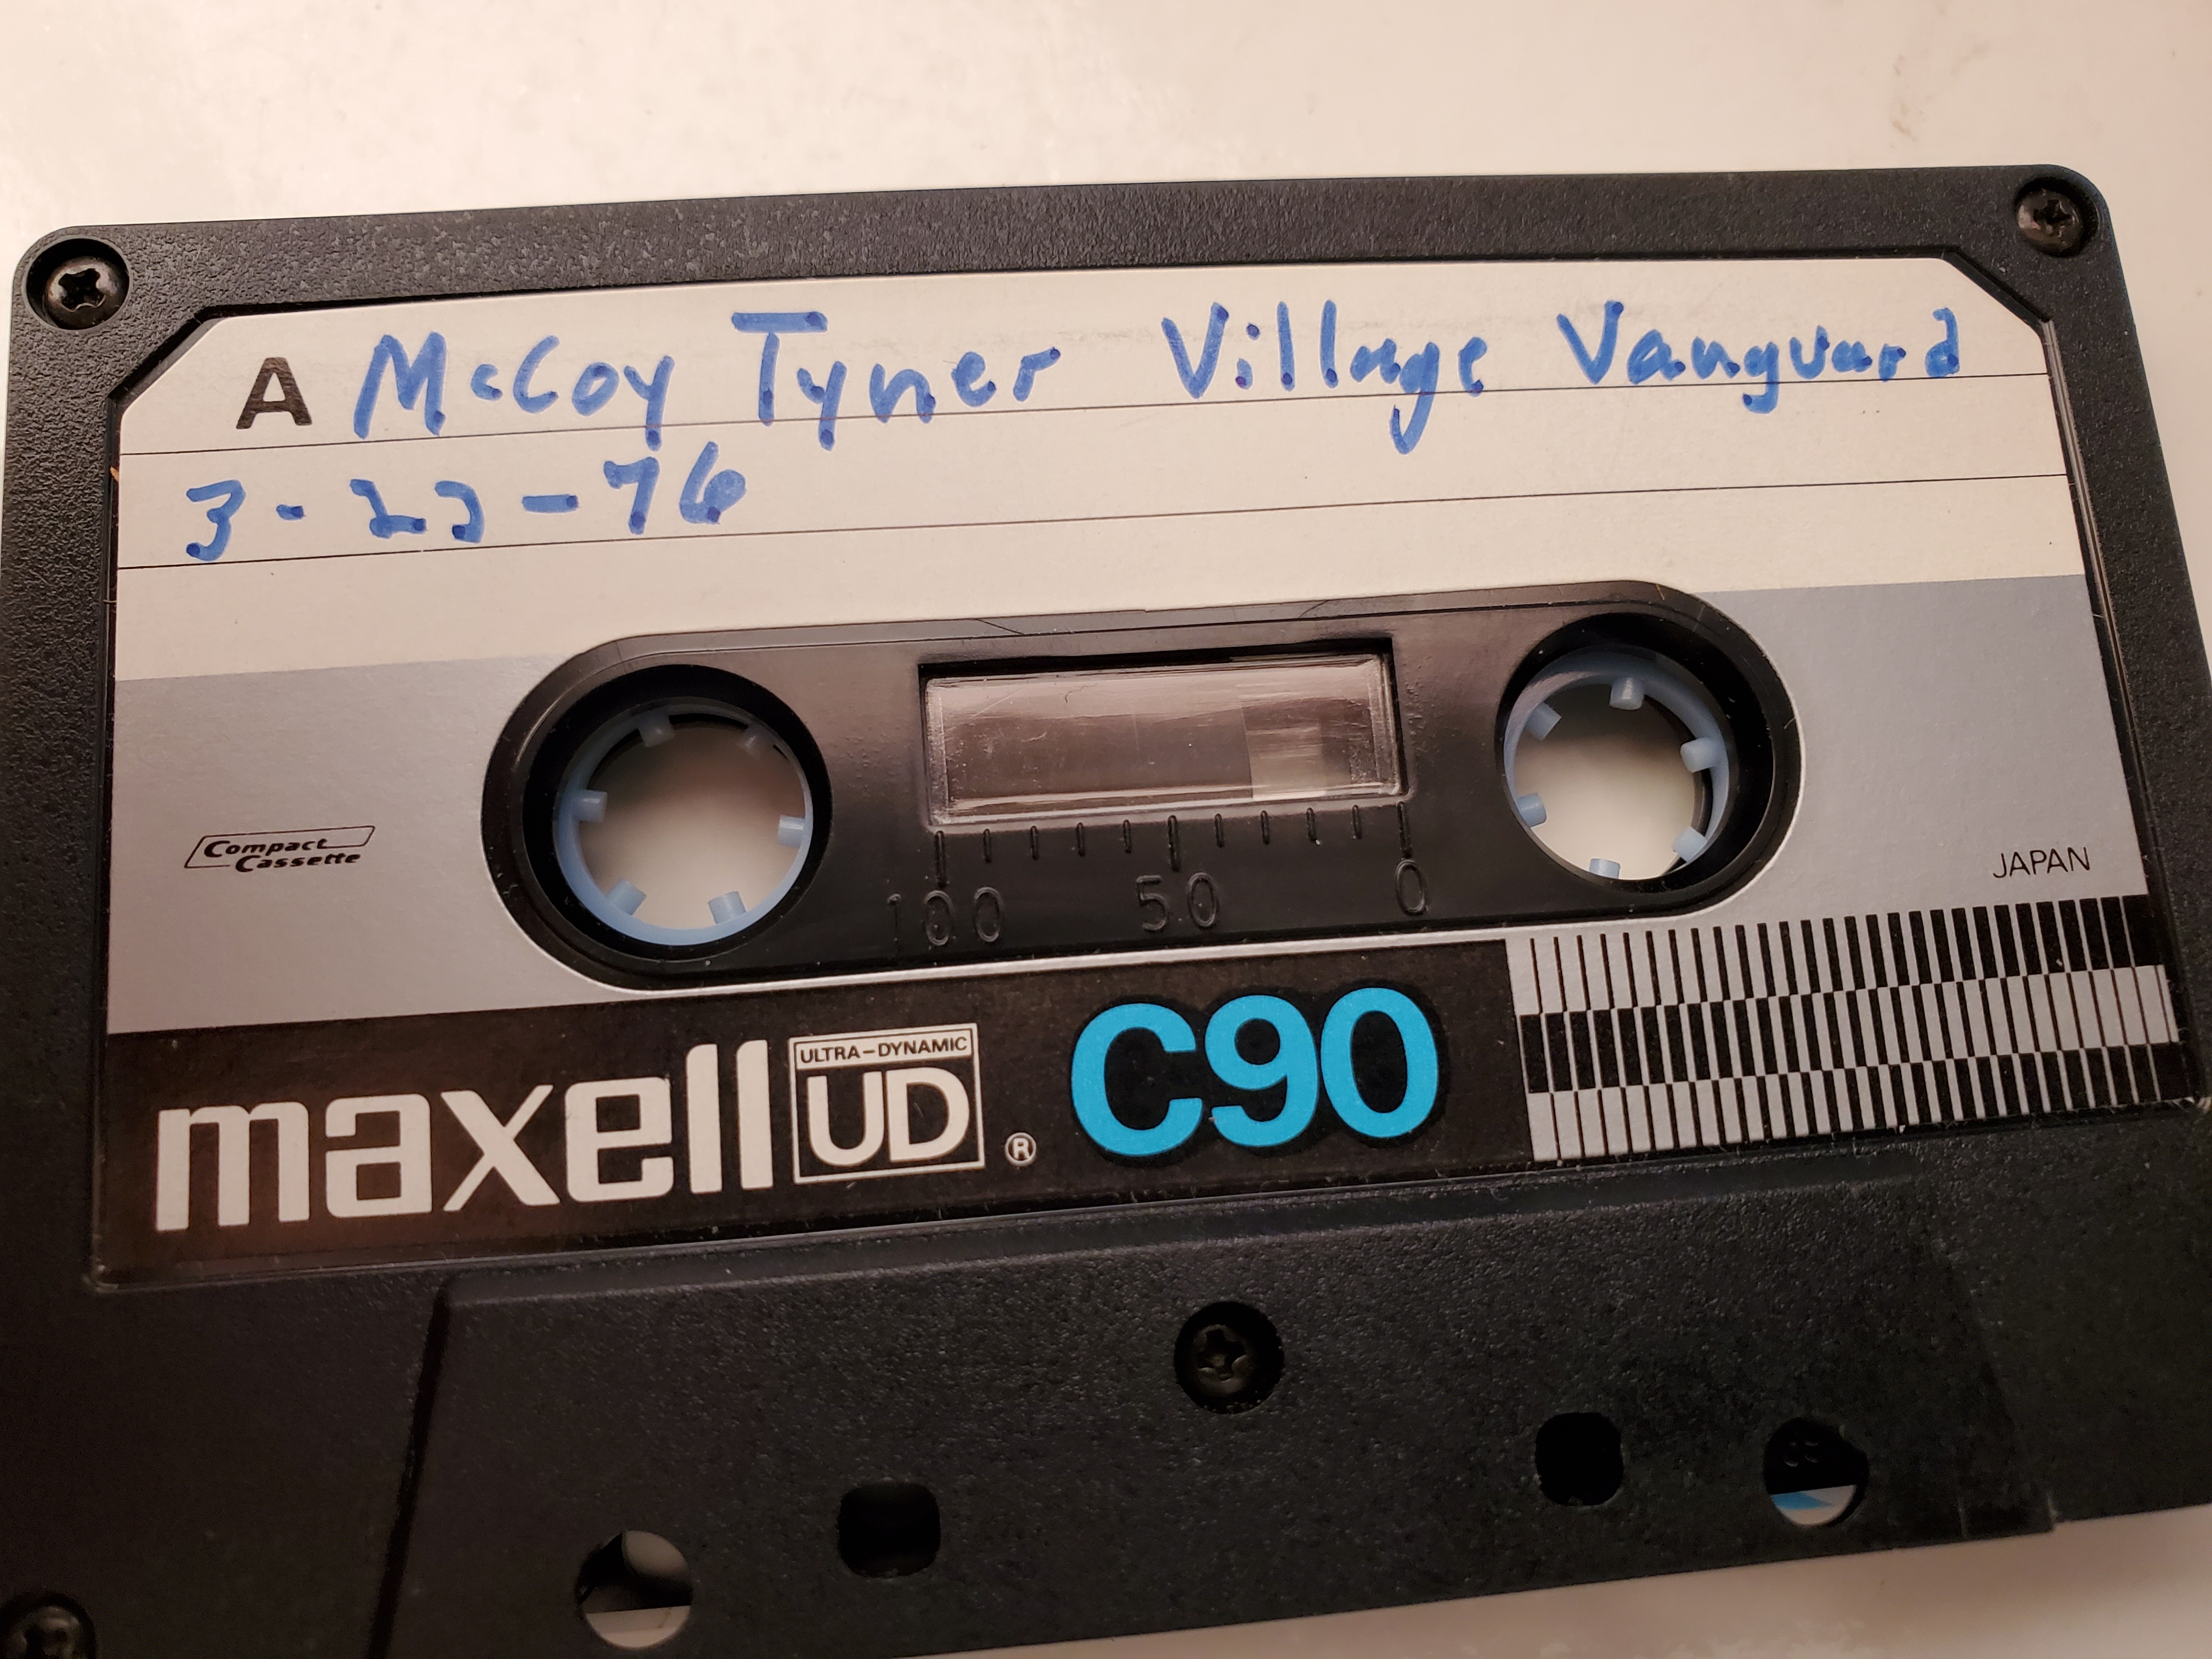 McCoyTyner1976-03-23VillageVanguardNYC.jpg